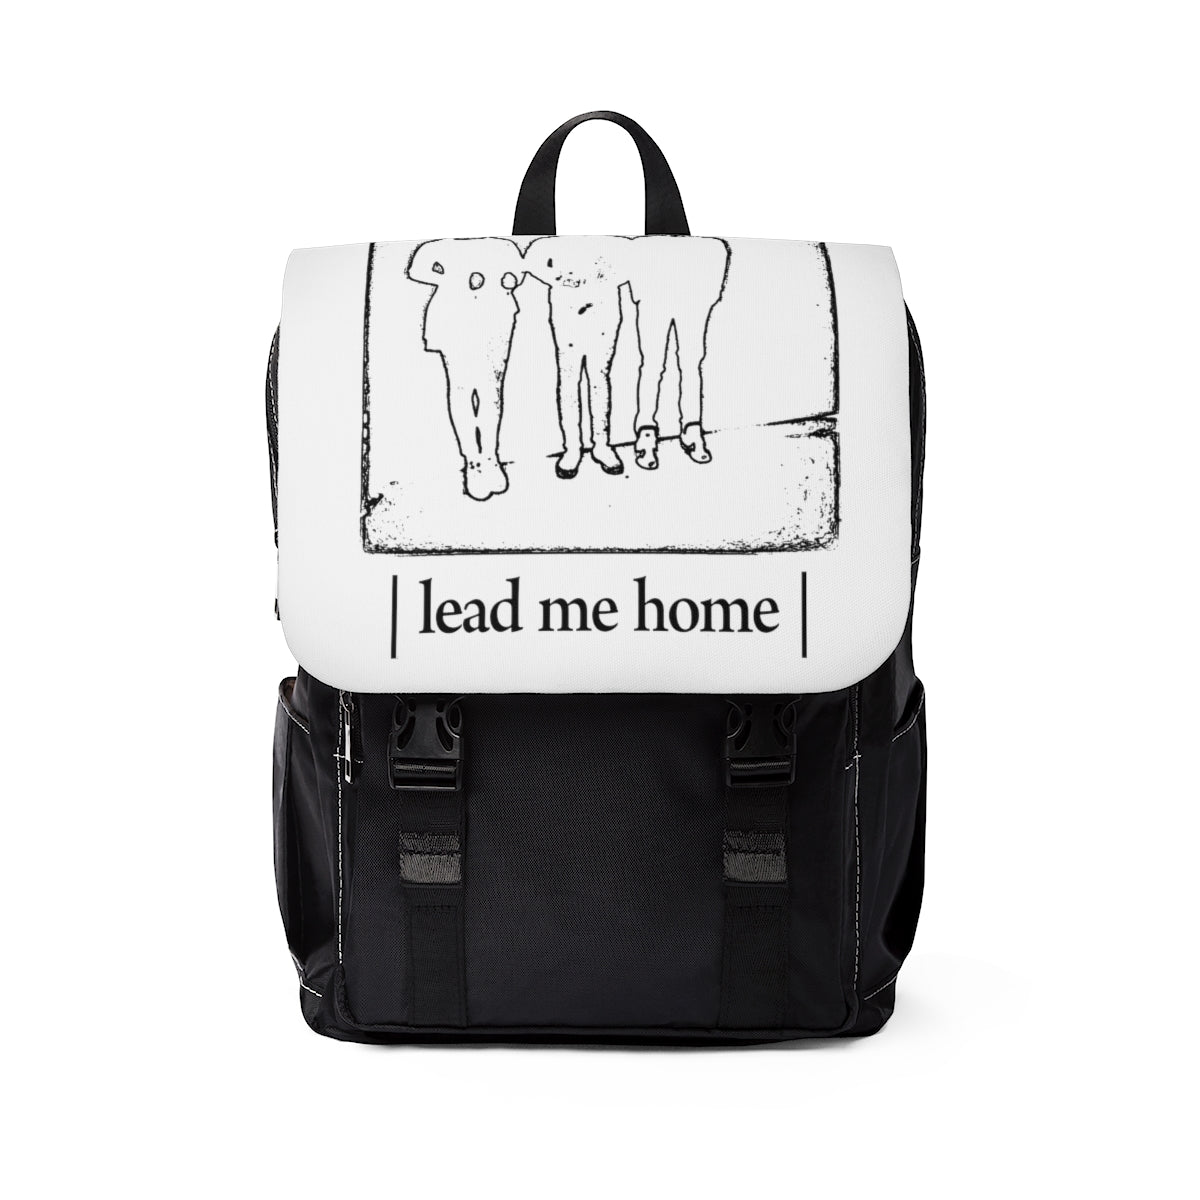 "lead me home" backpack